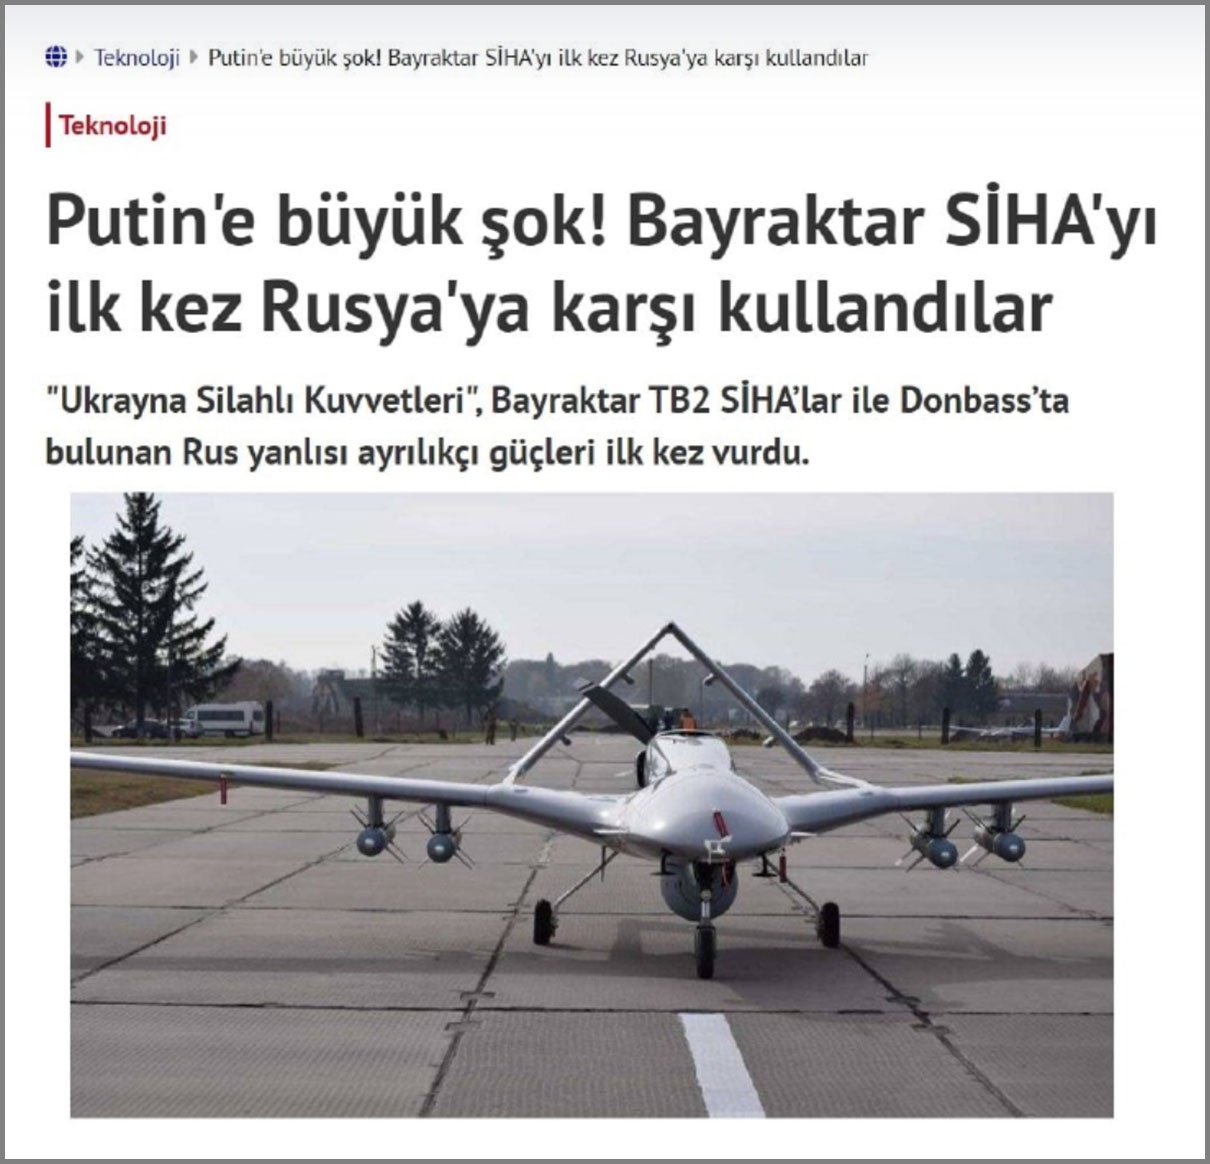 Турецкие СМИ предвкушают, кто следующий встанет в очередь на закупку турецких дронов.